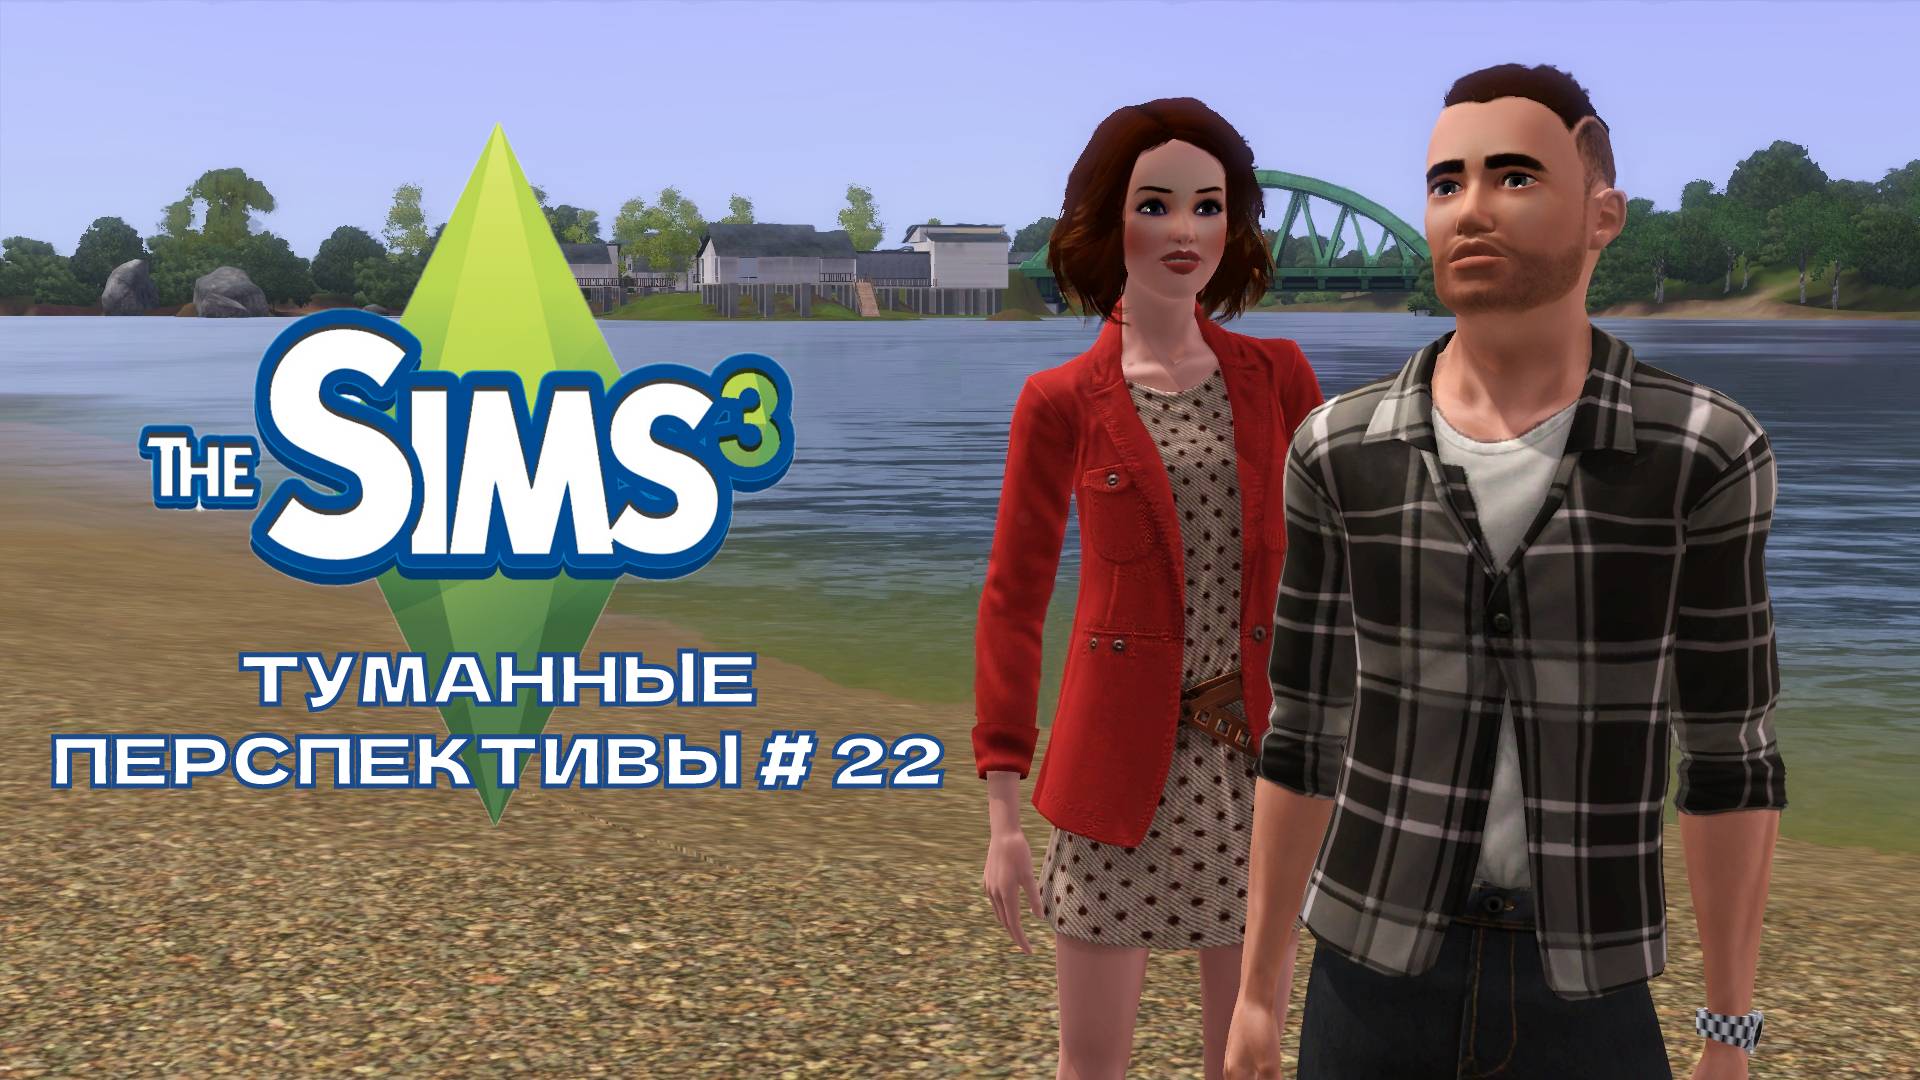 The Sims 3. Туманные перспективы #22. Горячее предложение